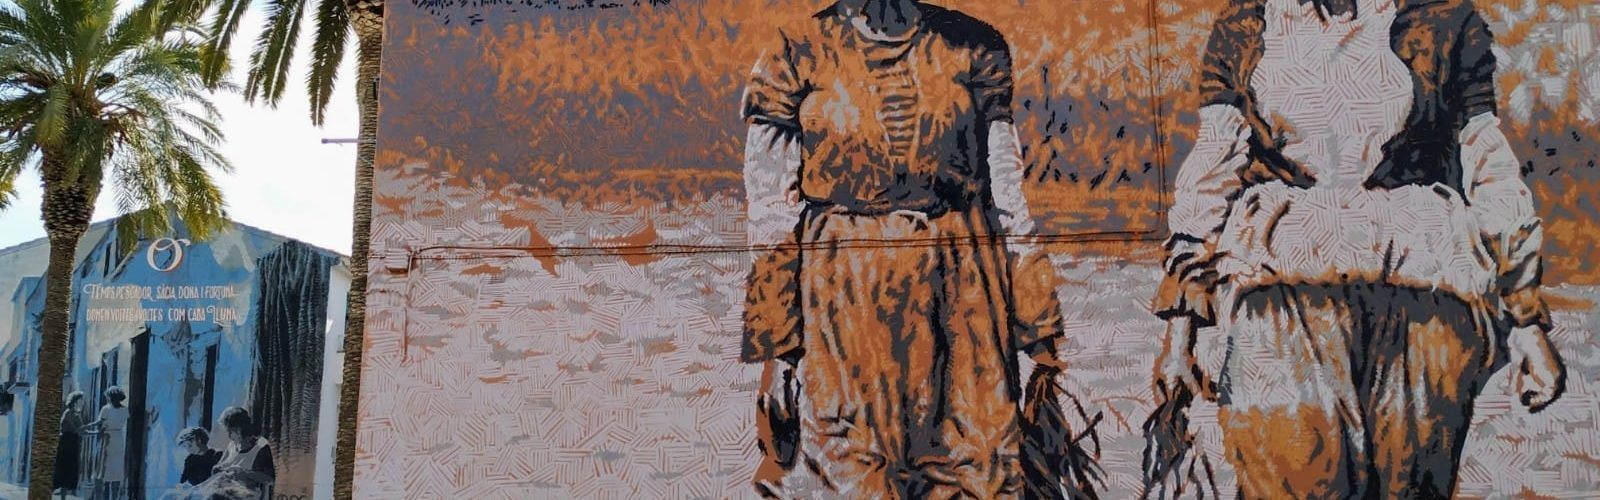 Fotos: La dona pagesa, en un mural a la Ràpita